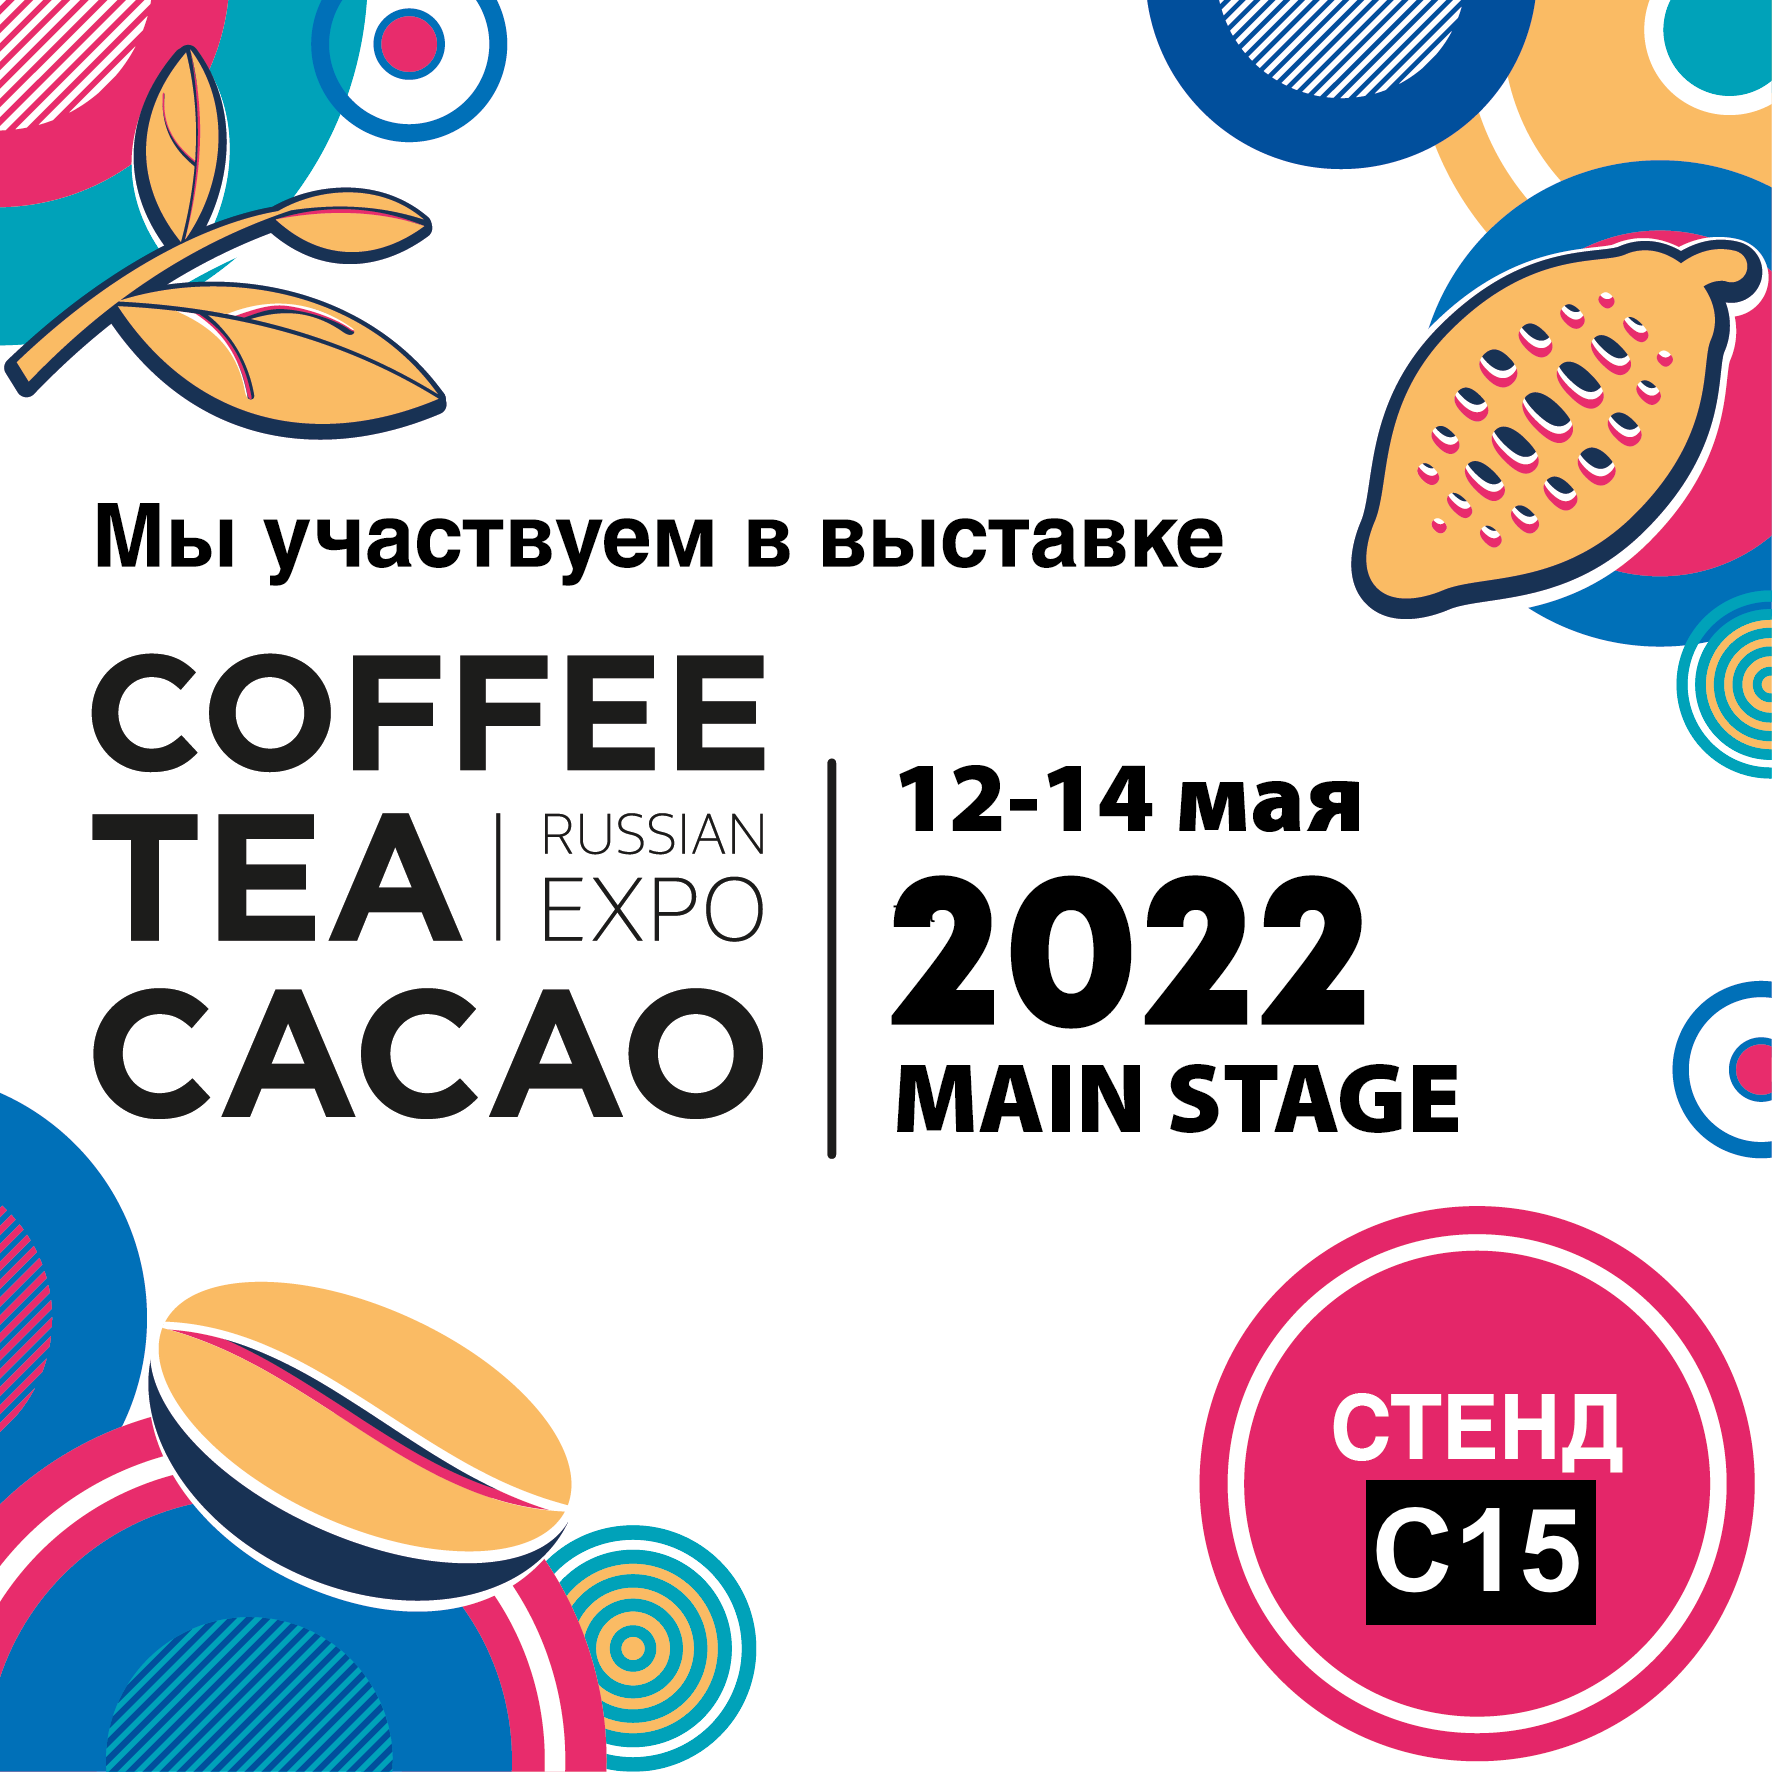 Cacao expo. Выставка Coffee Tea Cacao Russian Expo 2022. Coffee Tea Cacao Russian Expo. Russia Expo logo 2022. Expo-Russia Kyrgyzstan 2022.